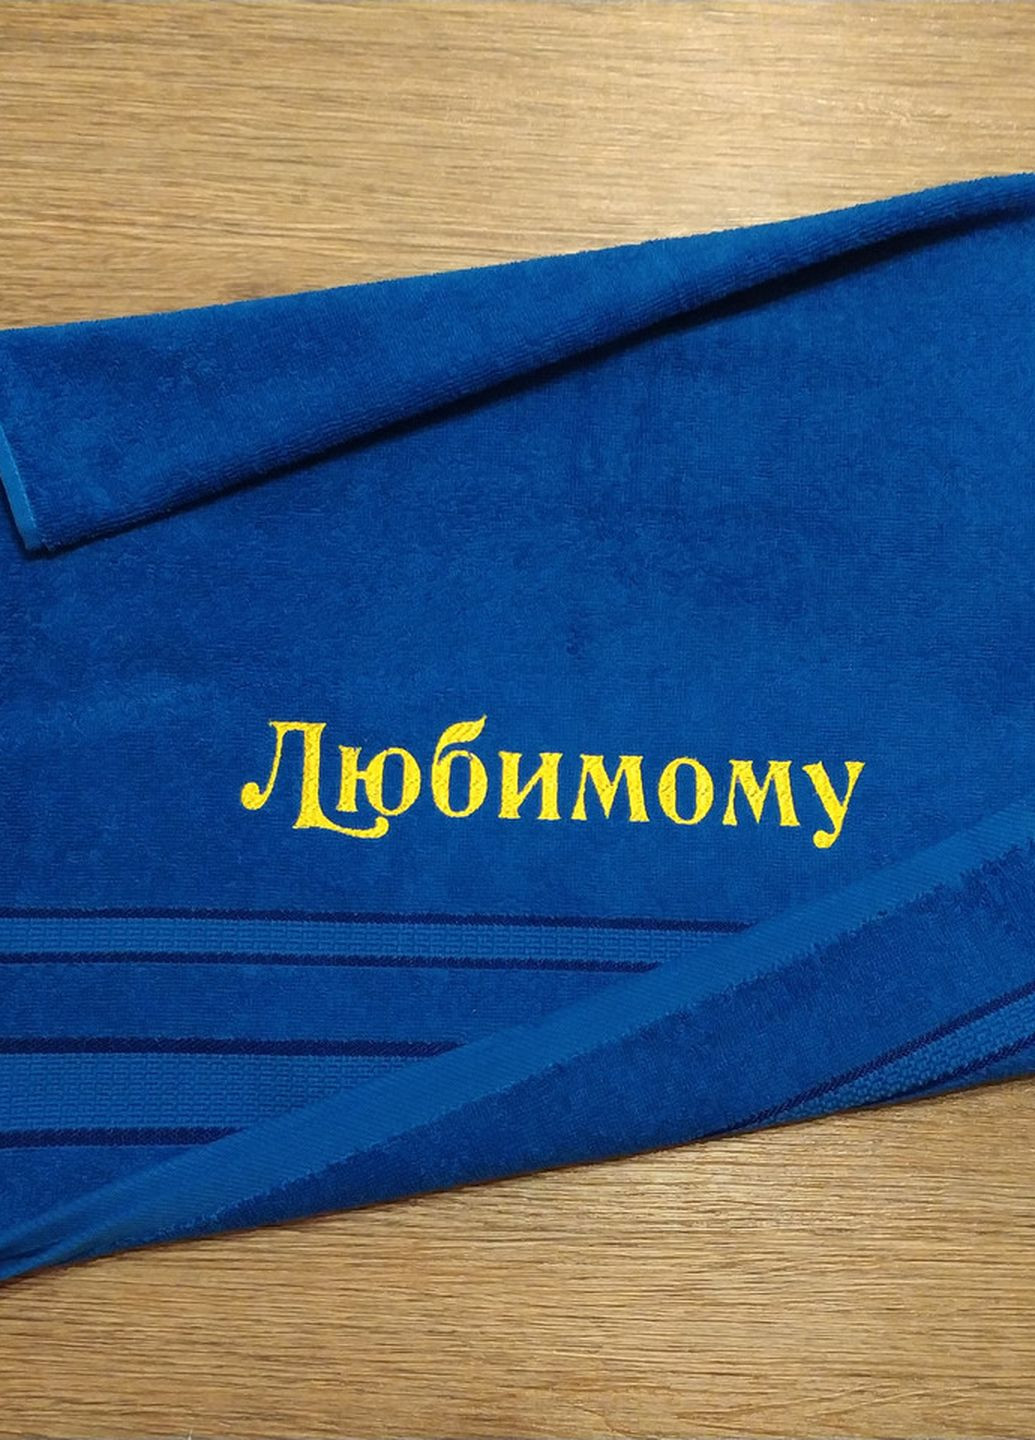 No Brand полотенце с вышивкой махровое лицевое 50*90 синий любимому мужу парню 00091 однотонный синий производство - Украина